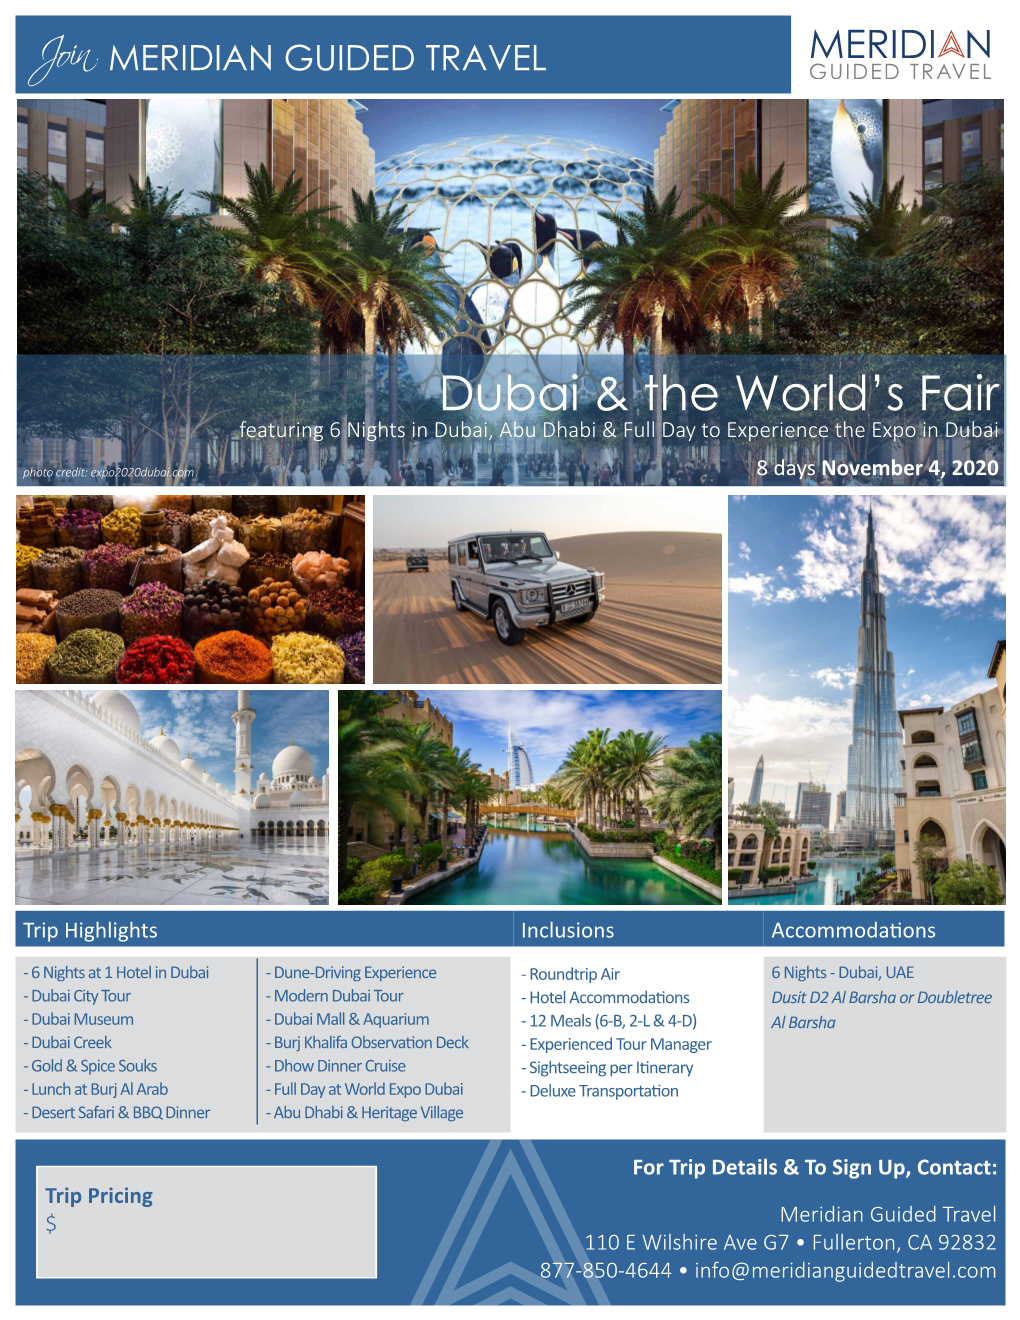 Dubai & the World's Fair